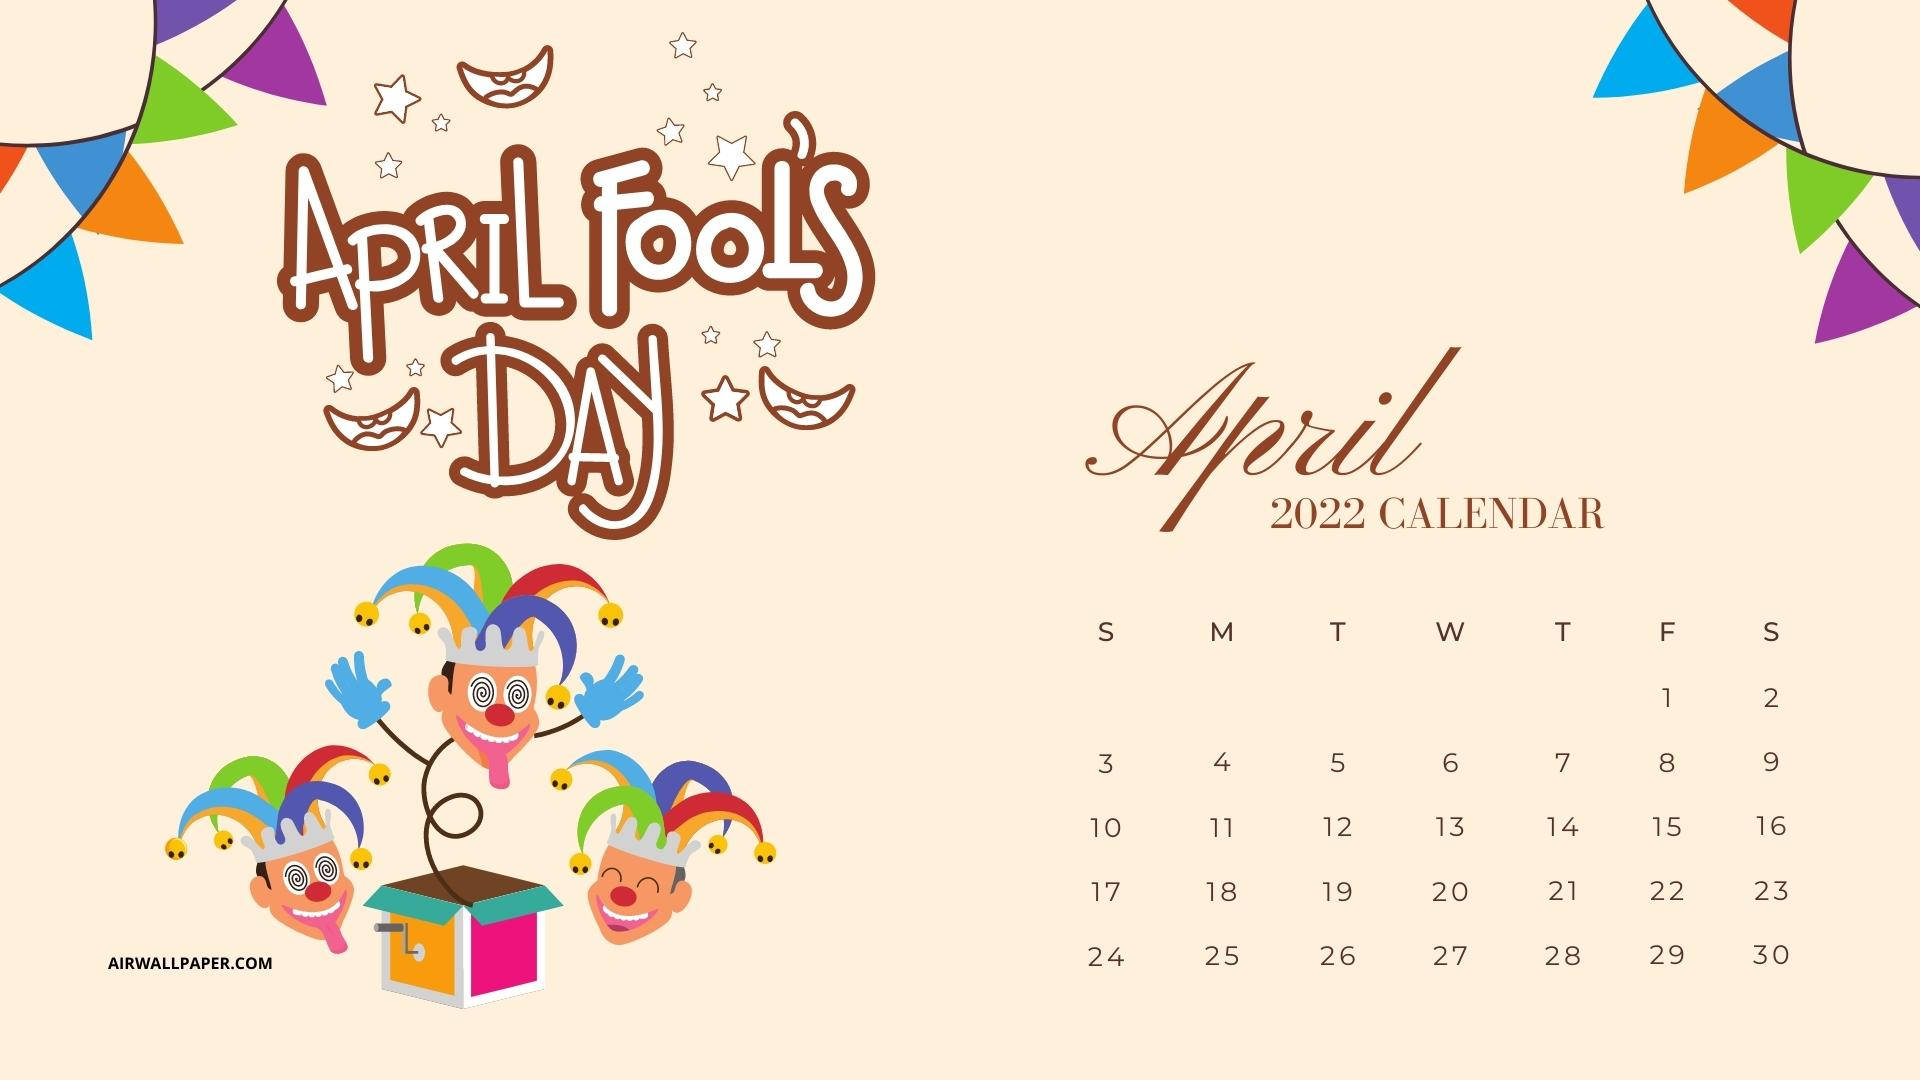 April Fools Day April 2022 Calendar Wallpaper